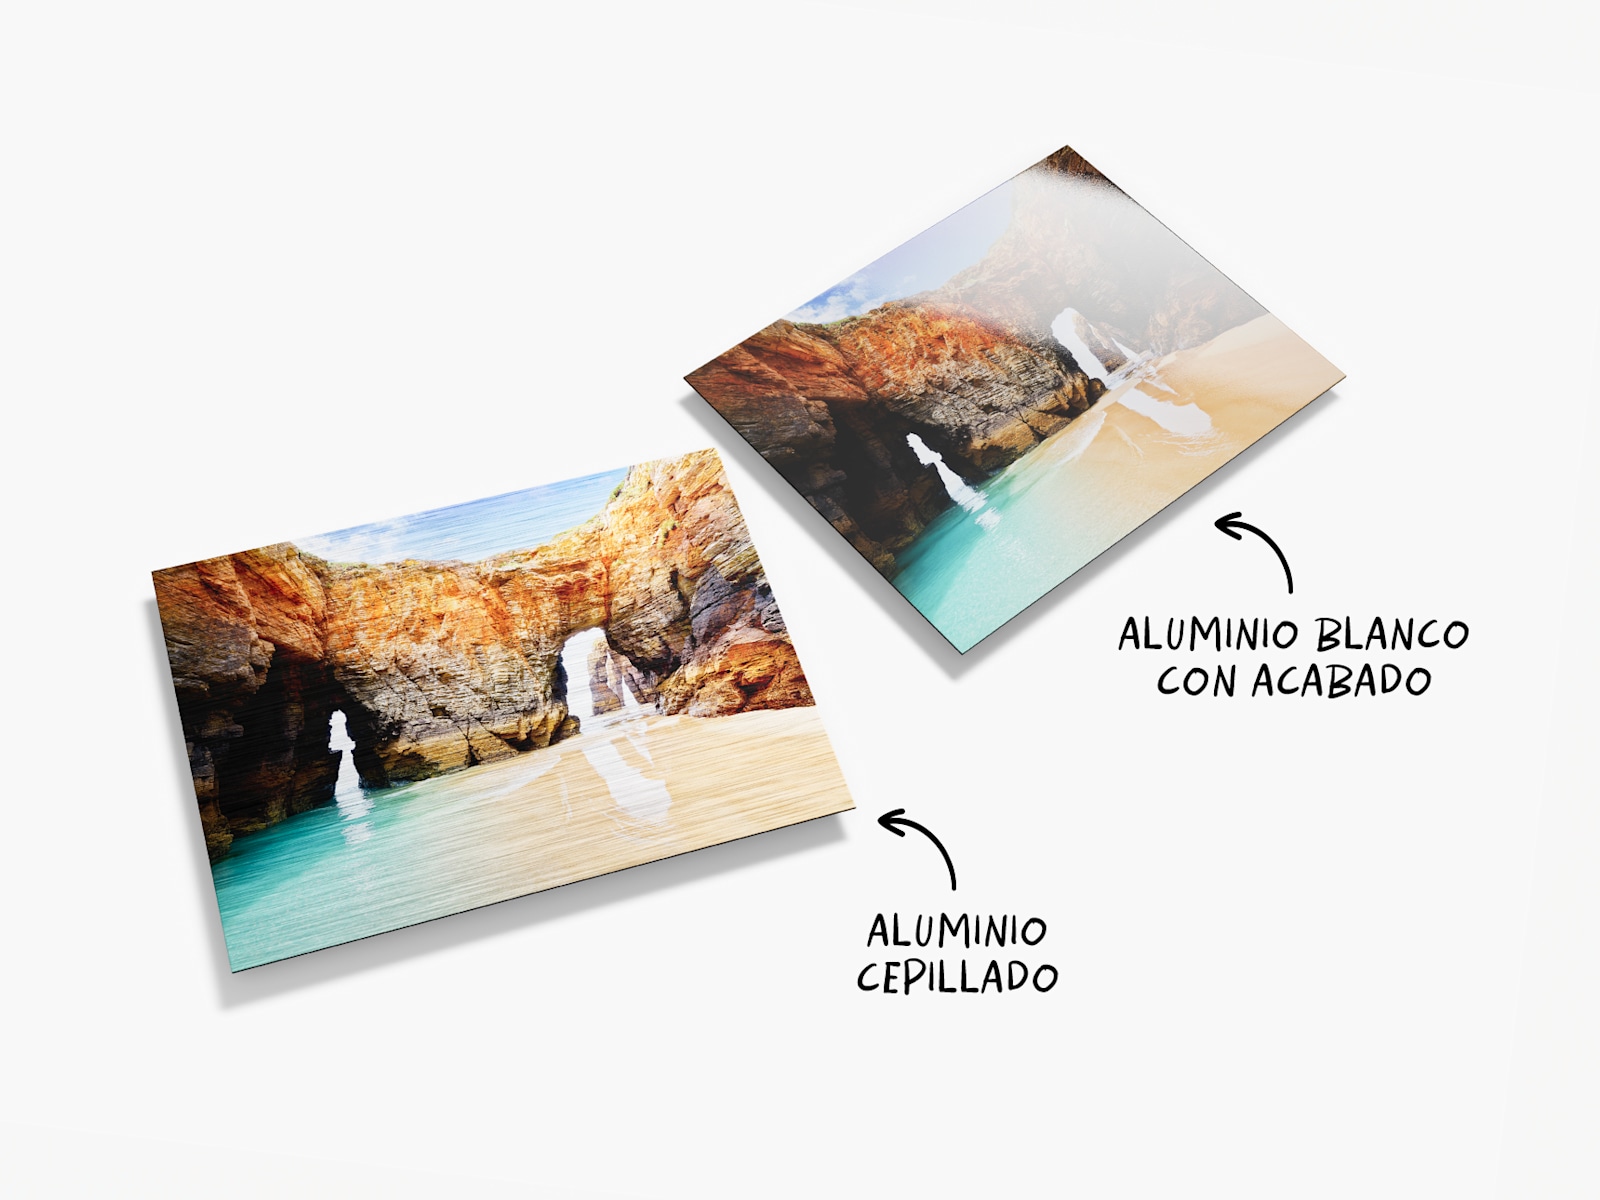 Dos láminas en aluminio con fotos de paisajes. Hay unos textos que indican que hay dos opciones de material, aluminio cepillado y aluminio blanco con acabado.